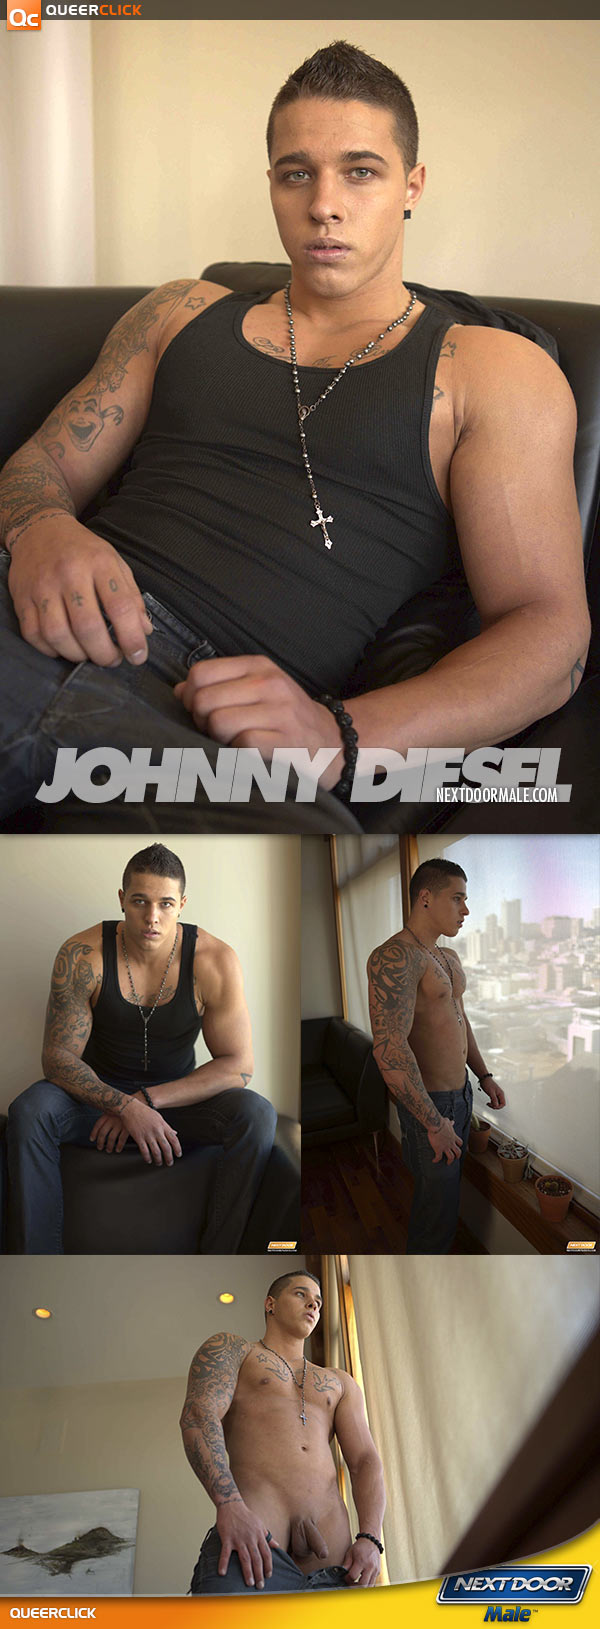 NextDoorMale: Johnny Diesel